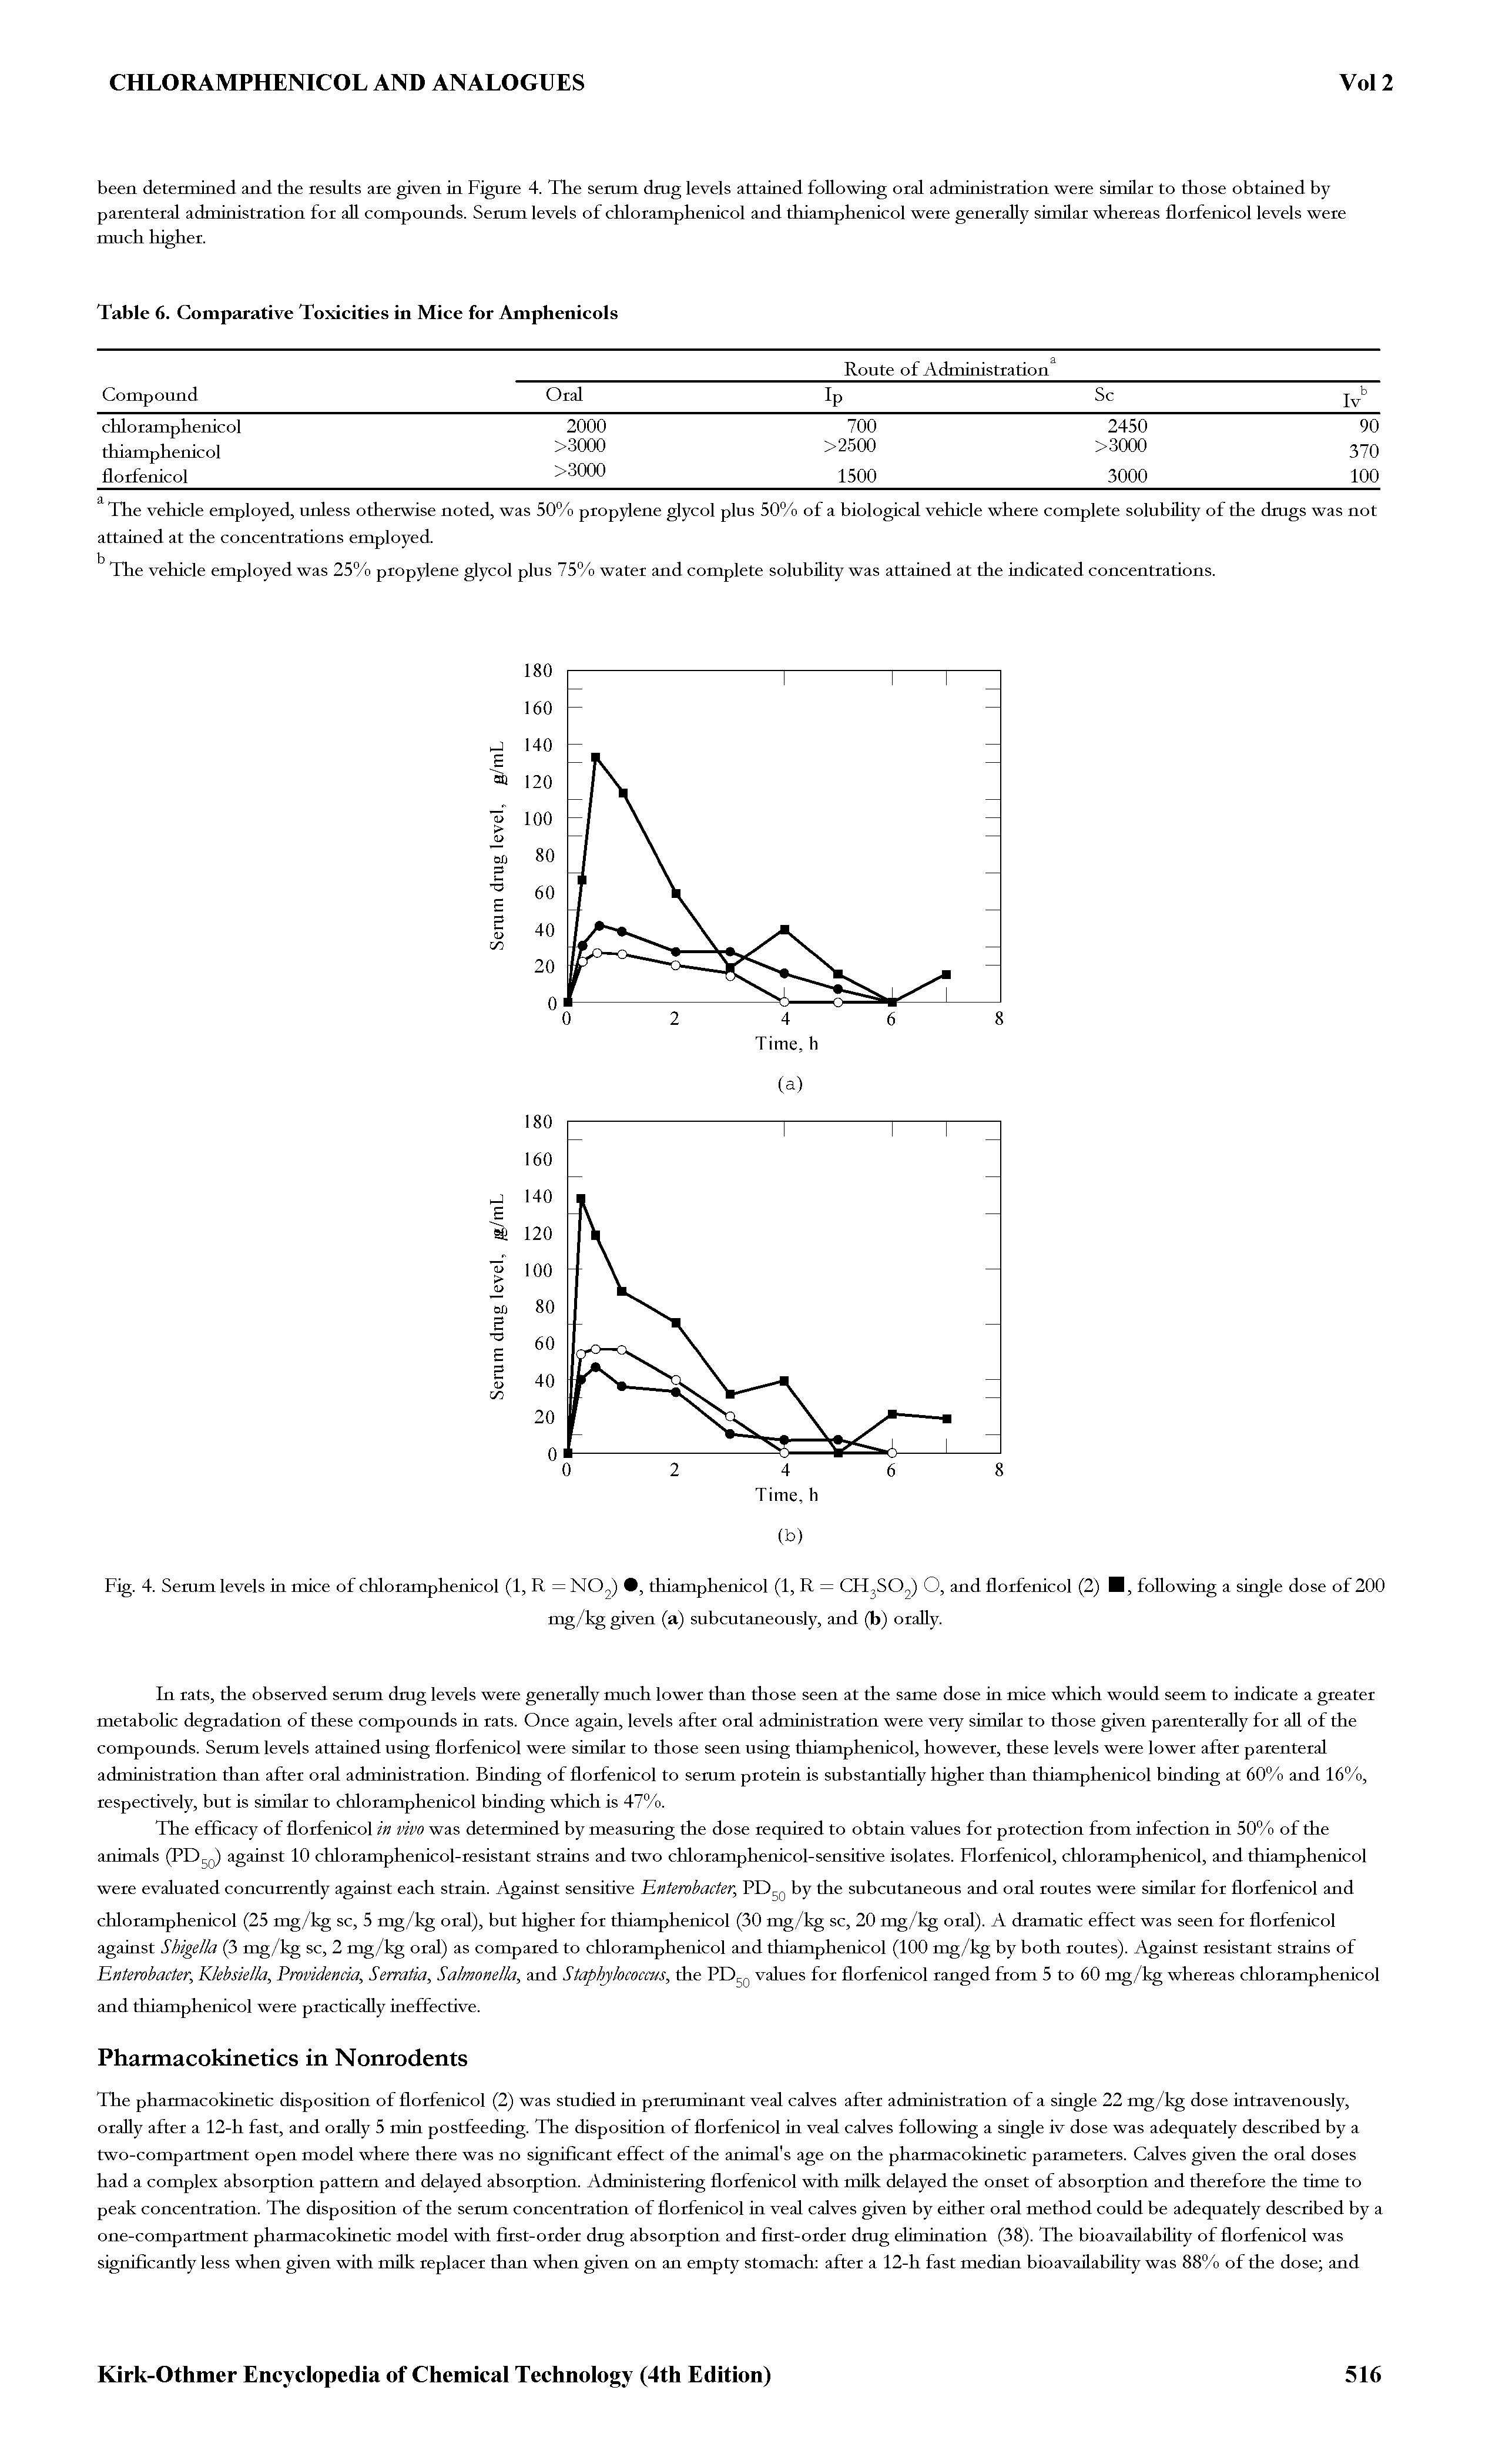 Fig. 4. Semm levels in mice of chloramphenicol (1, R = NO2) thiamphenicol (1, R = CH2SO2) O, and florfenicol (2) I, following a single dose of 200...